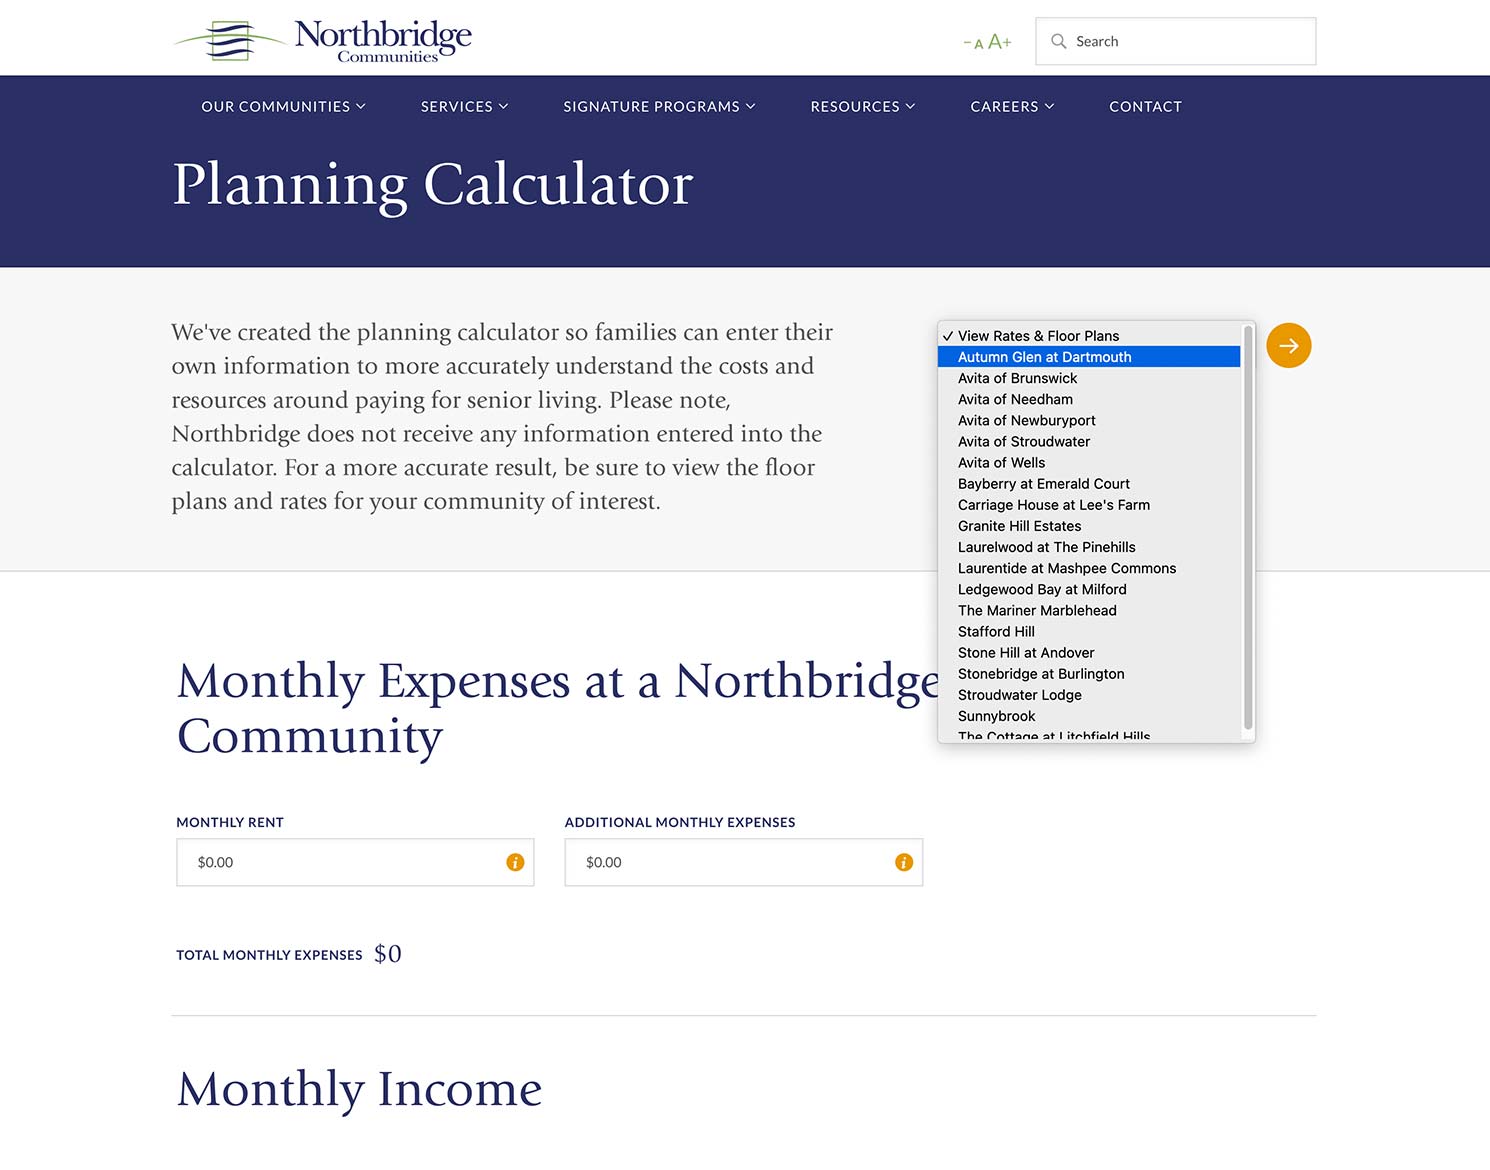 Northbridge Communities website design